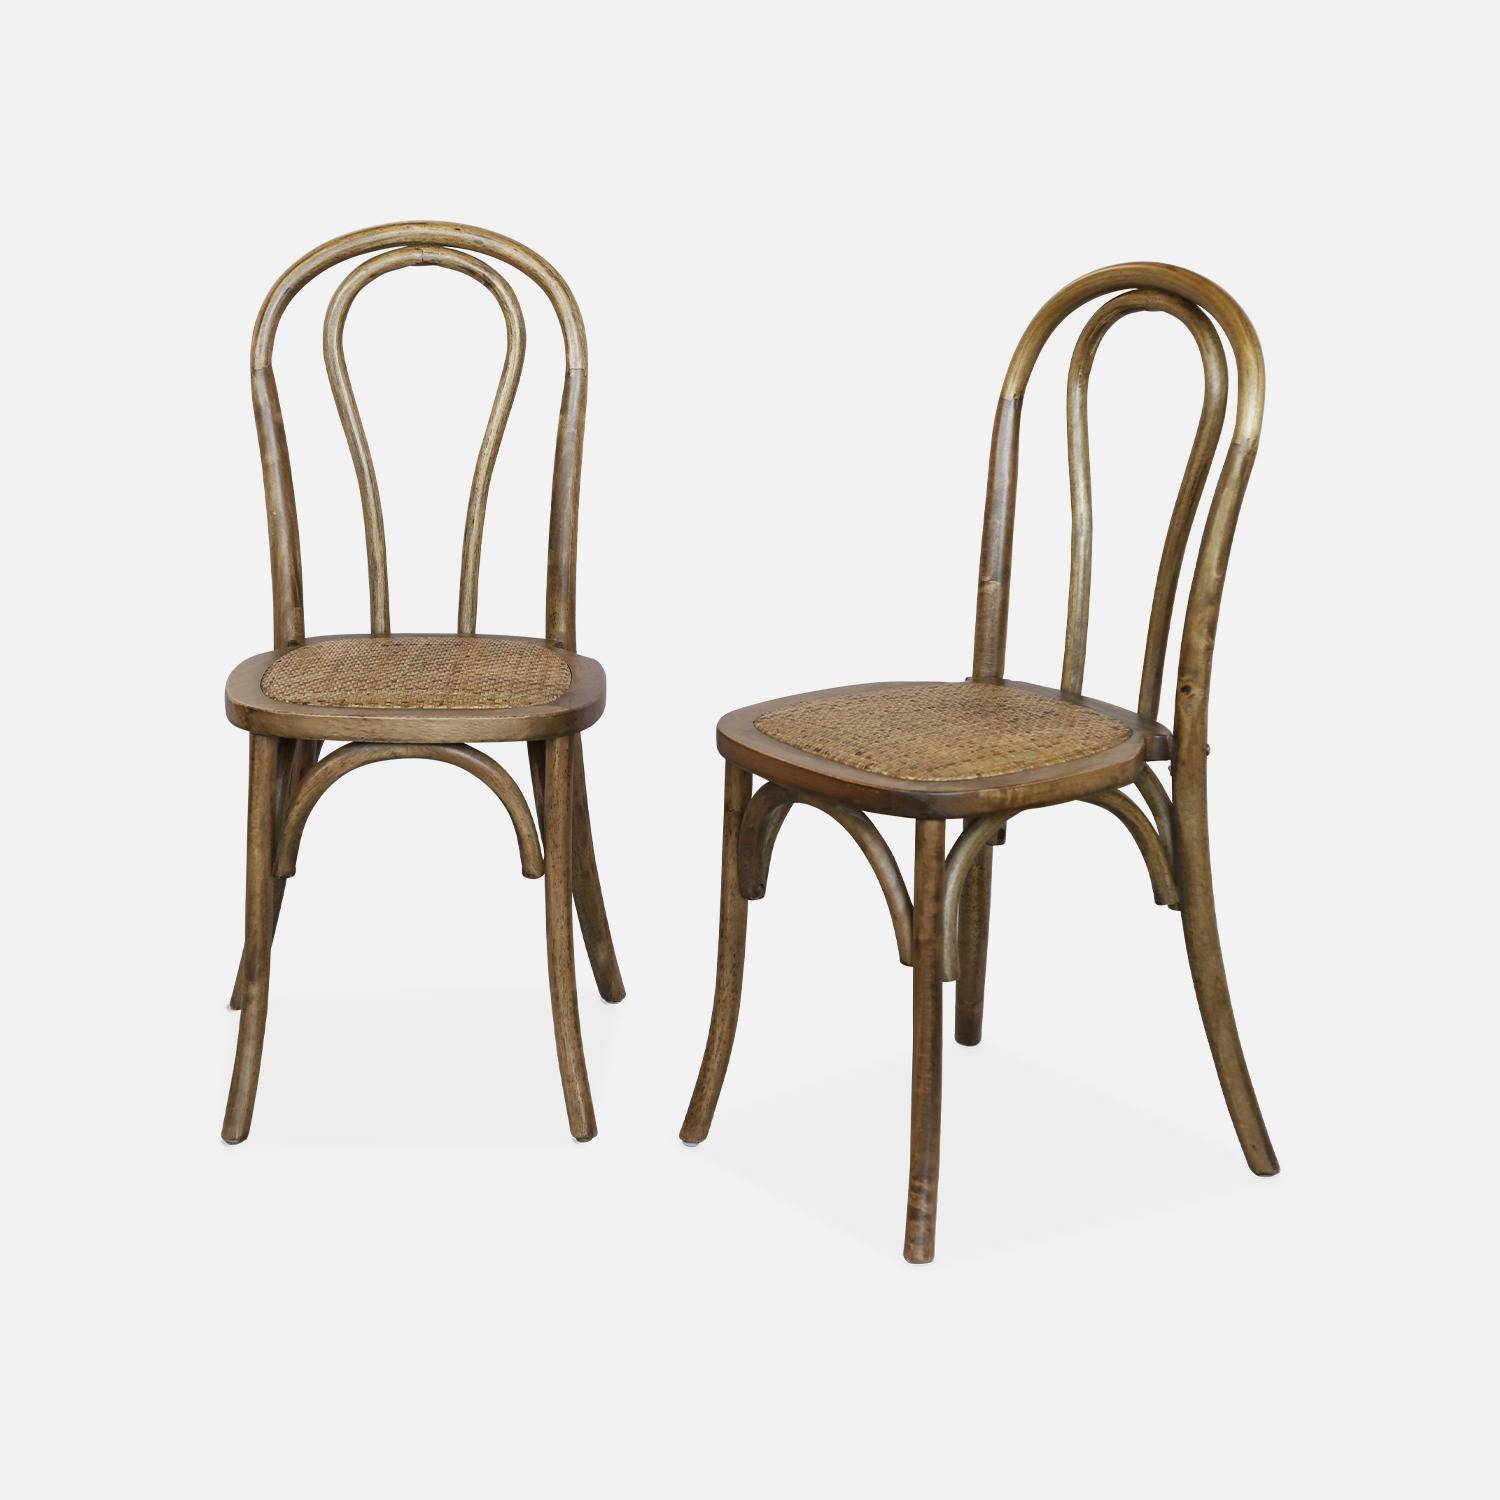 Juego de dos sillas vintage de madera con asiento de ratán y respaldo redondeado en marrón antiguo Photo1